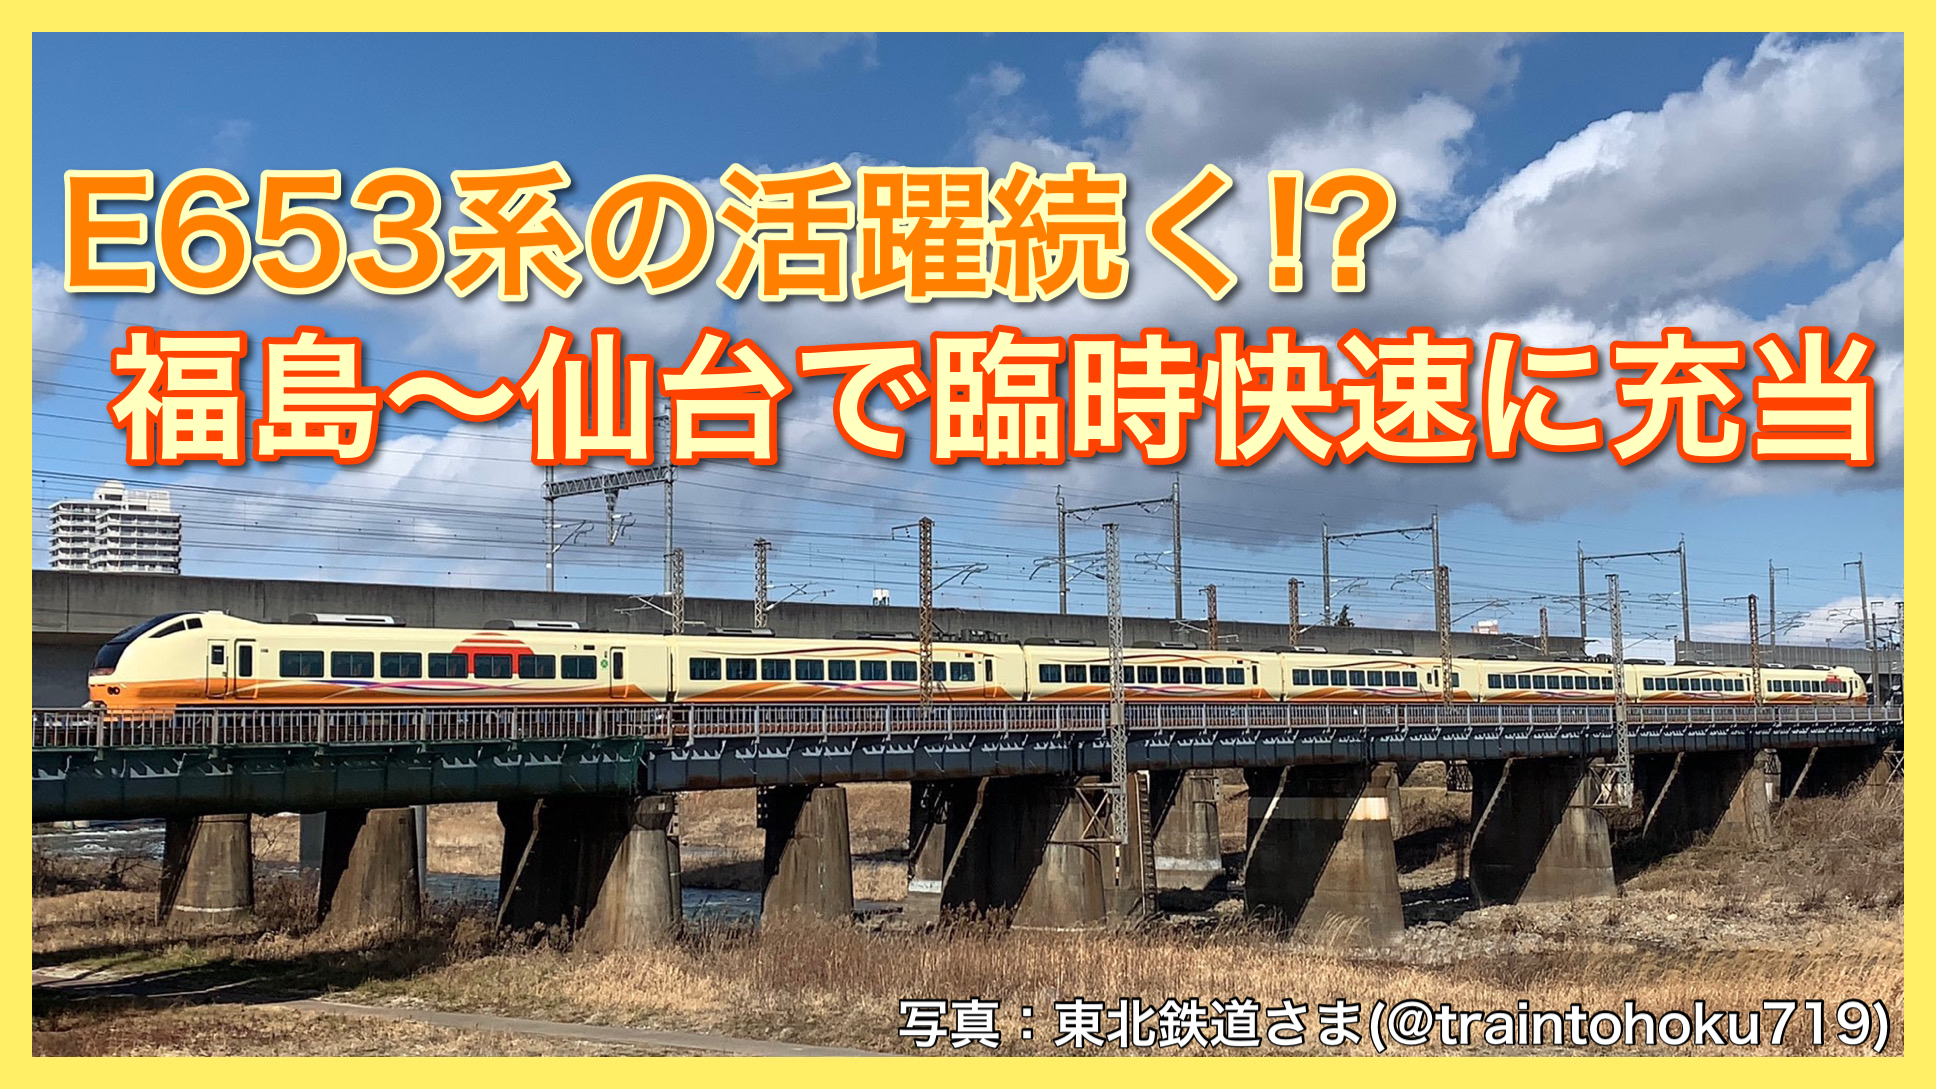 東北 新幹線 時刻 表 臨時